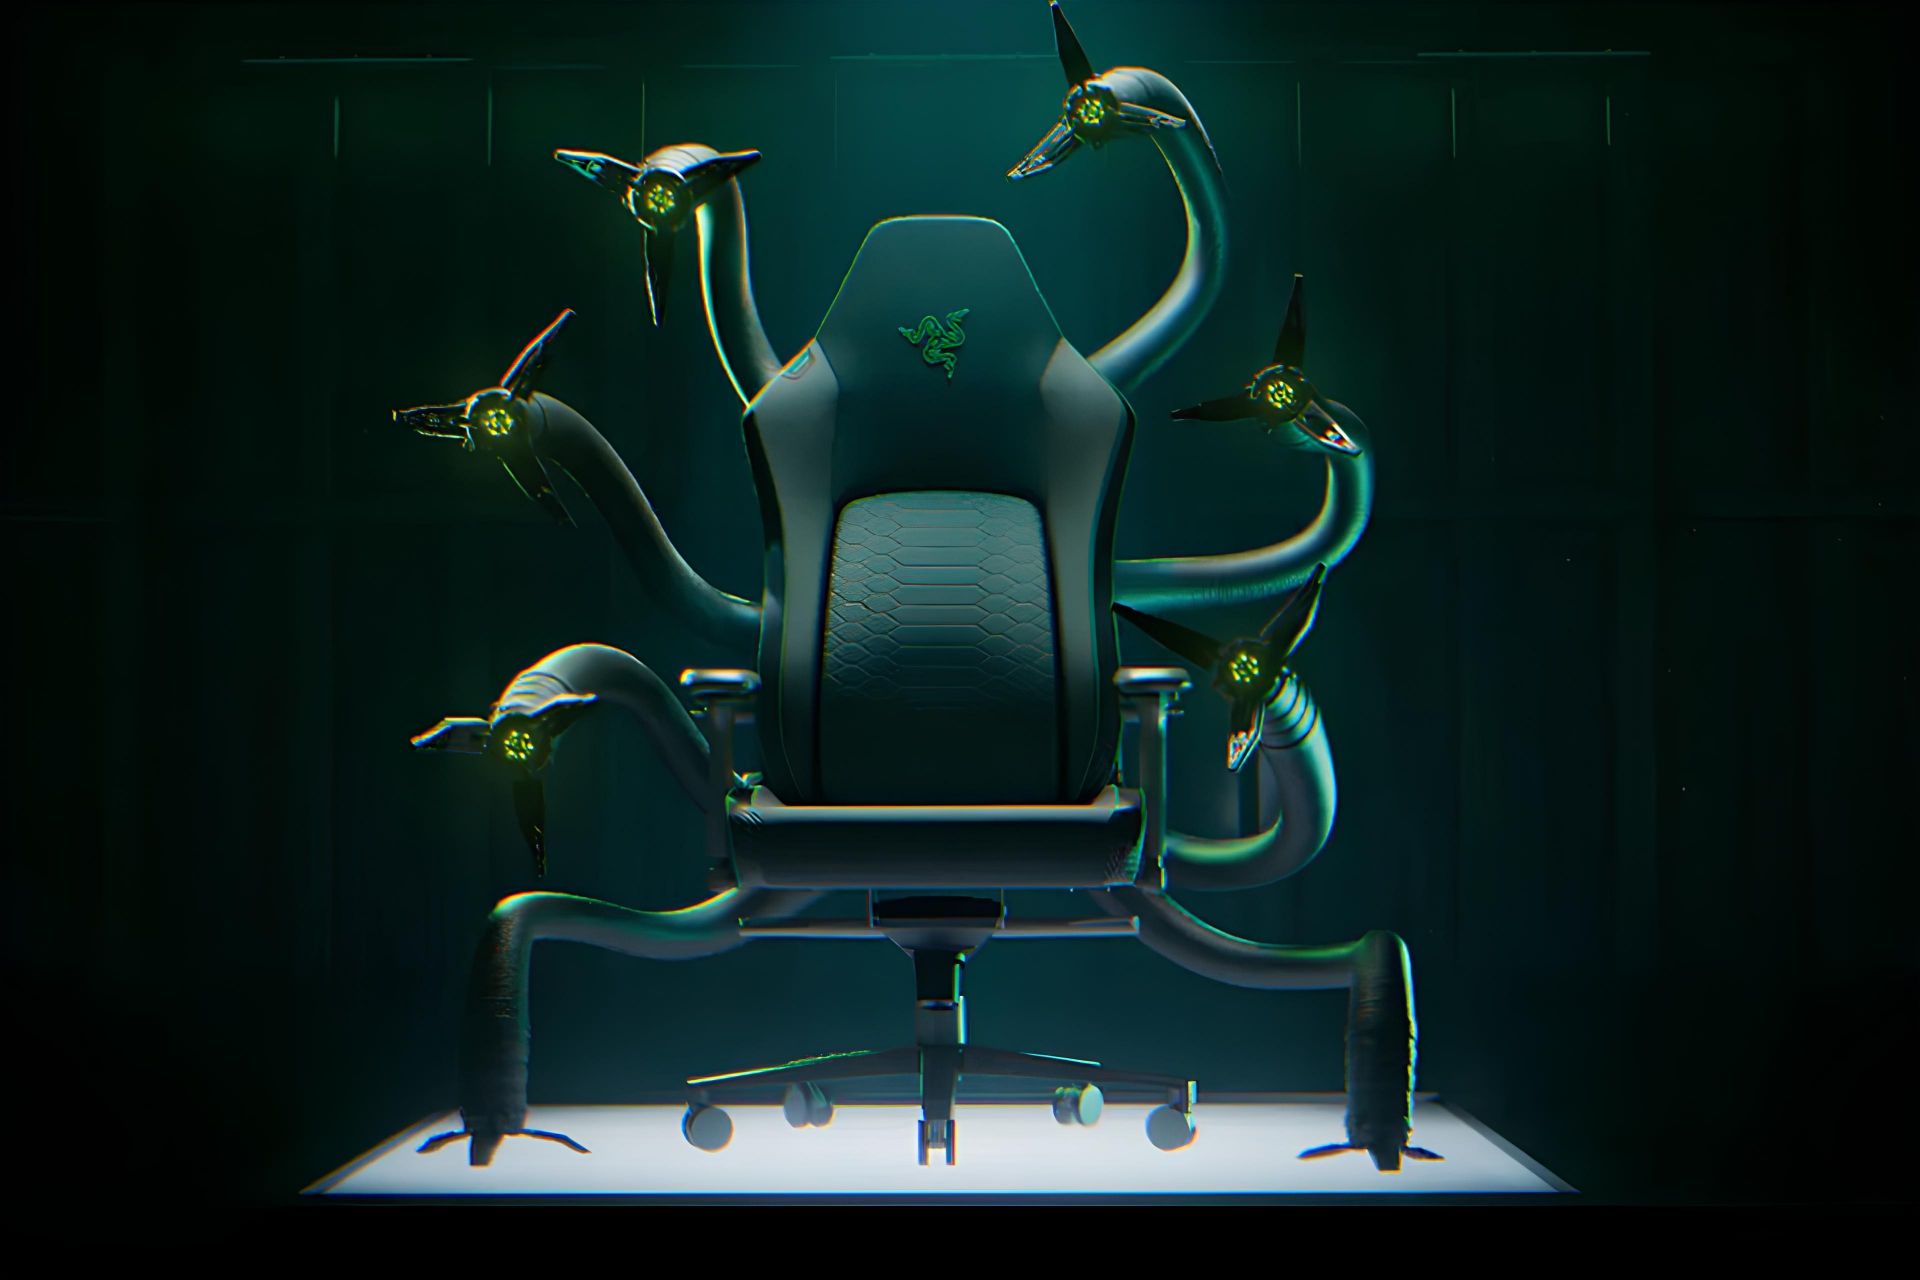 مدل مفهومی صندلی گیمینگ ریزر Cthulhu از نمای جلو و بازوهای رباتیک